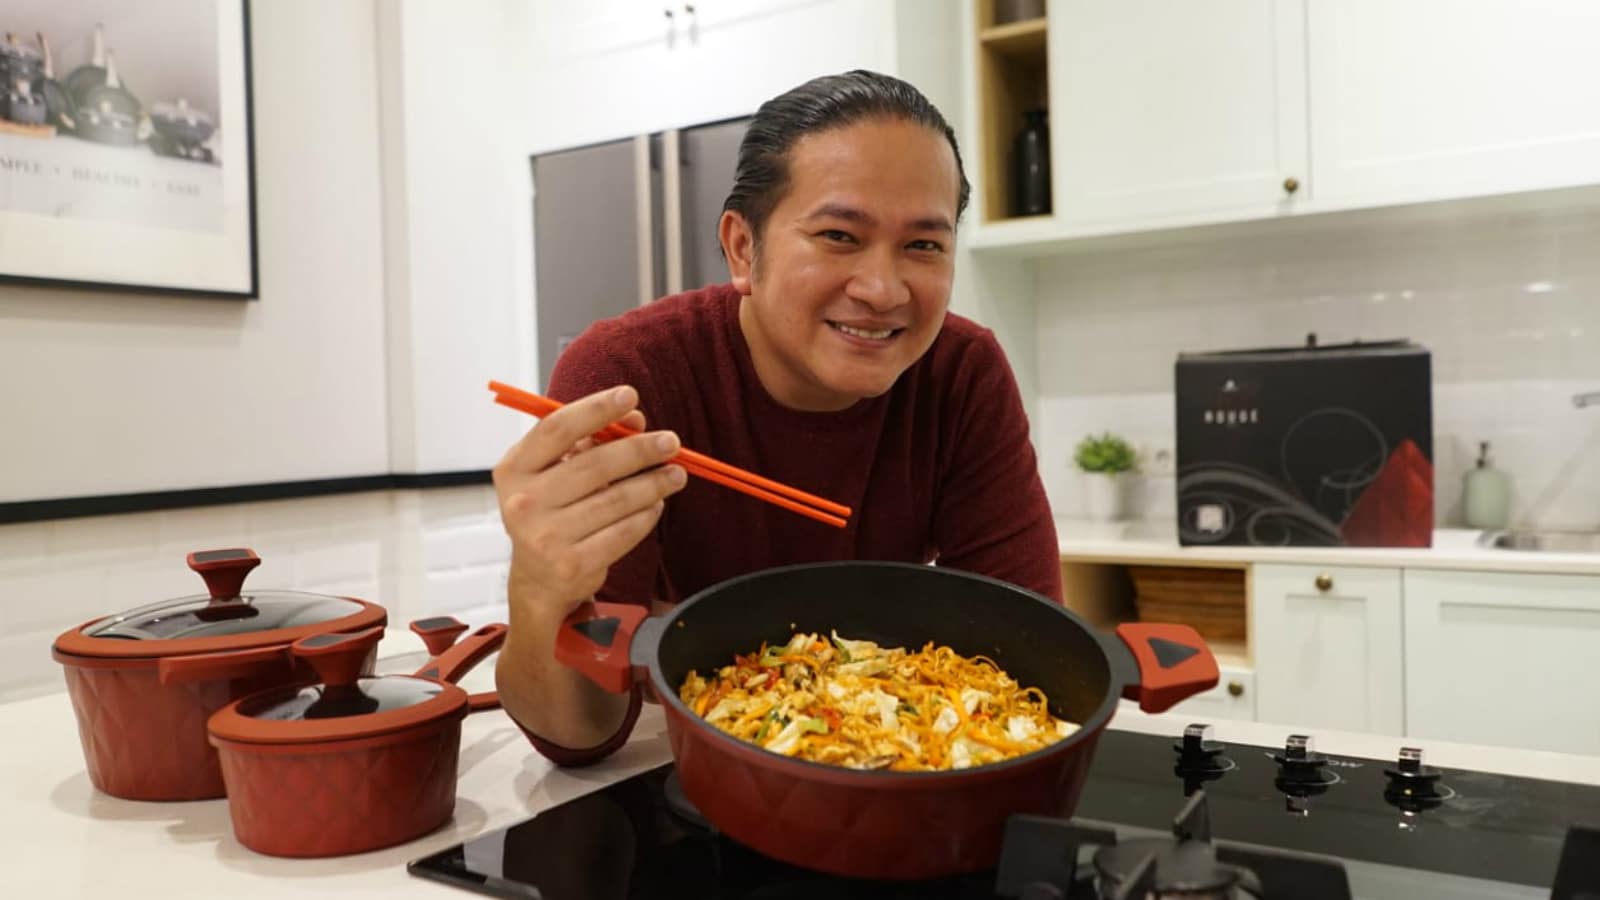 Een kijkje in de keuken bij populaire Indonesische TV-chefs